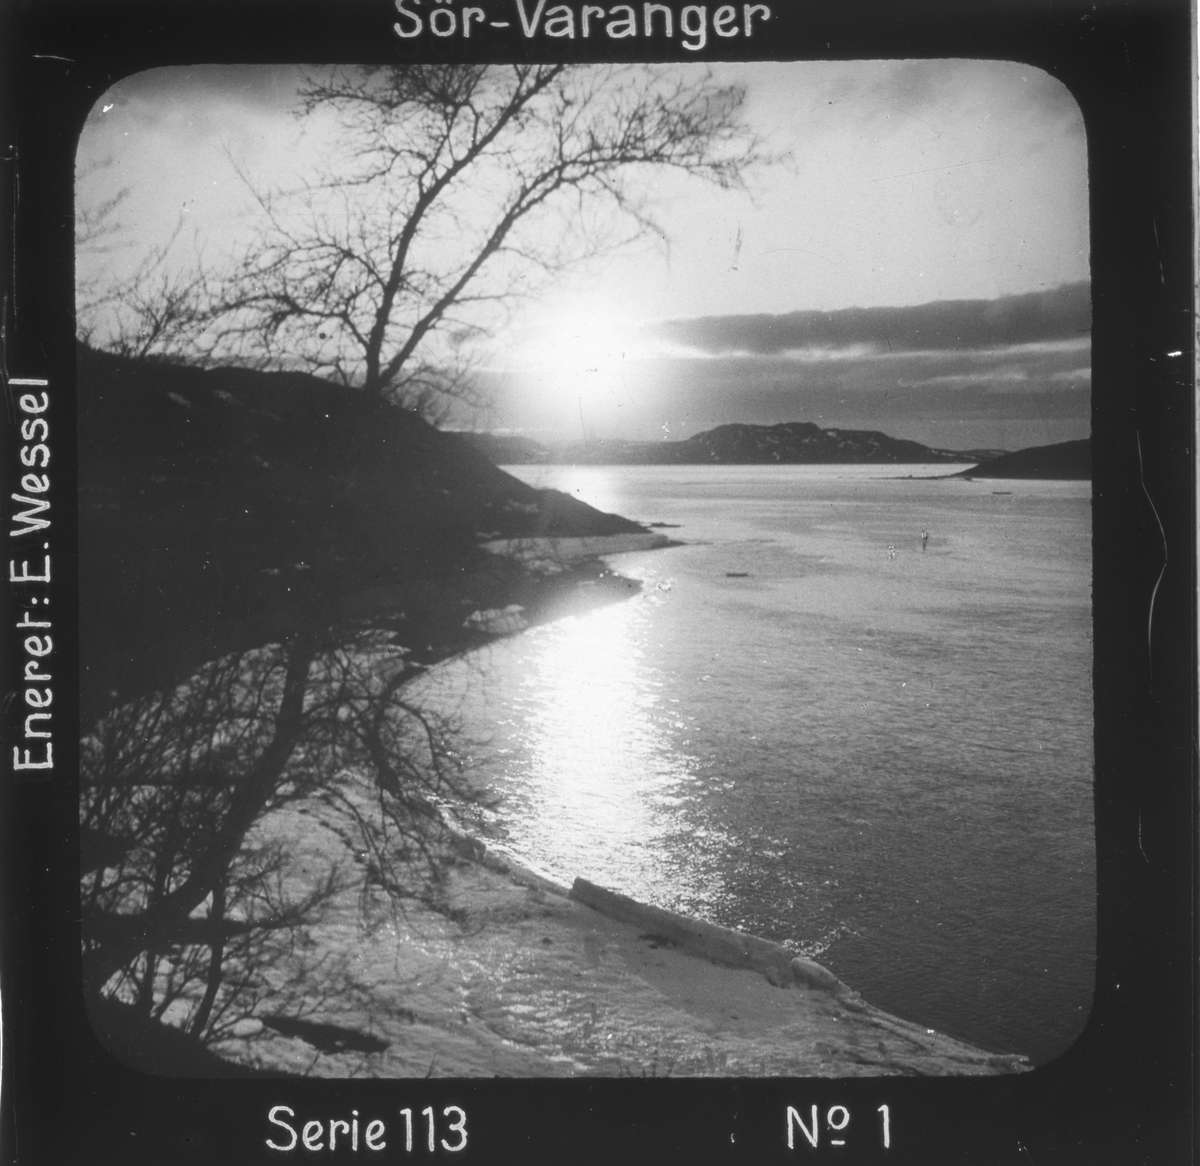 Midnattsol over Bøkfjorden, Sør-Varanger, Finnmark i juni.
Motivet har nr.1 i lysbildeforedraget kalt  "I lappernes land - Sør-Varanger", utgitt i Nerliens Lysbilledserier, serie nr 113. 